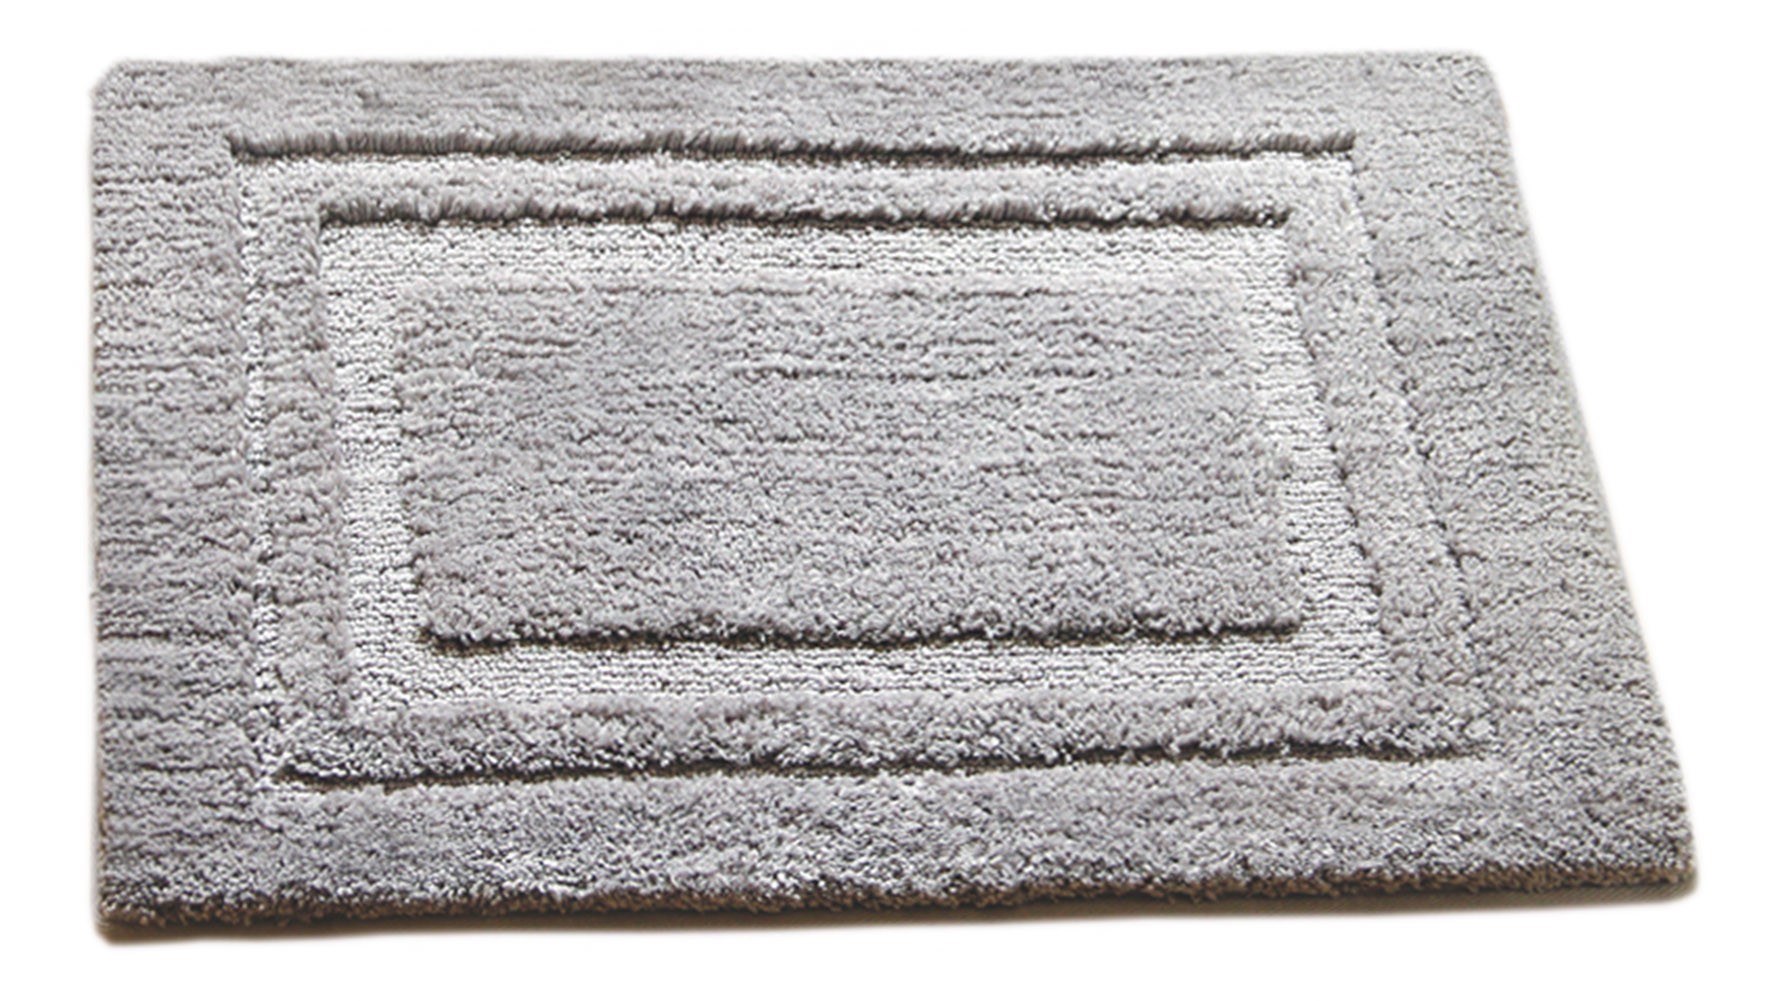 [Morden] Home Decor Rug Bathroom/Living Room Doormat Indoor/Outdoor Mat,Gray,15.75x23.62 inches